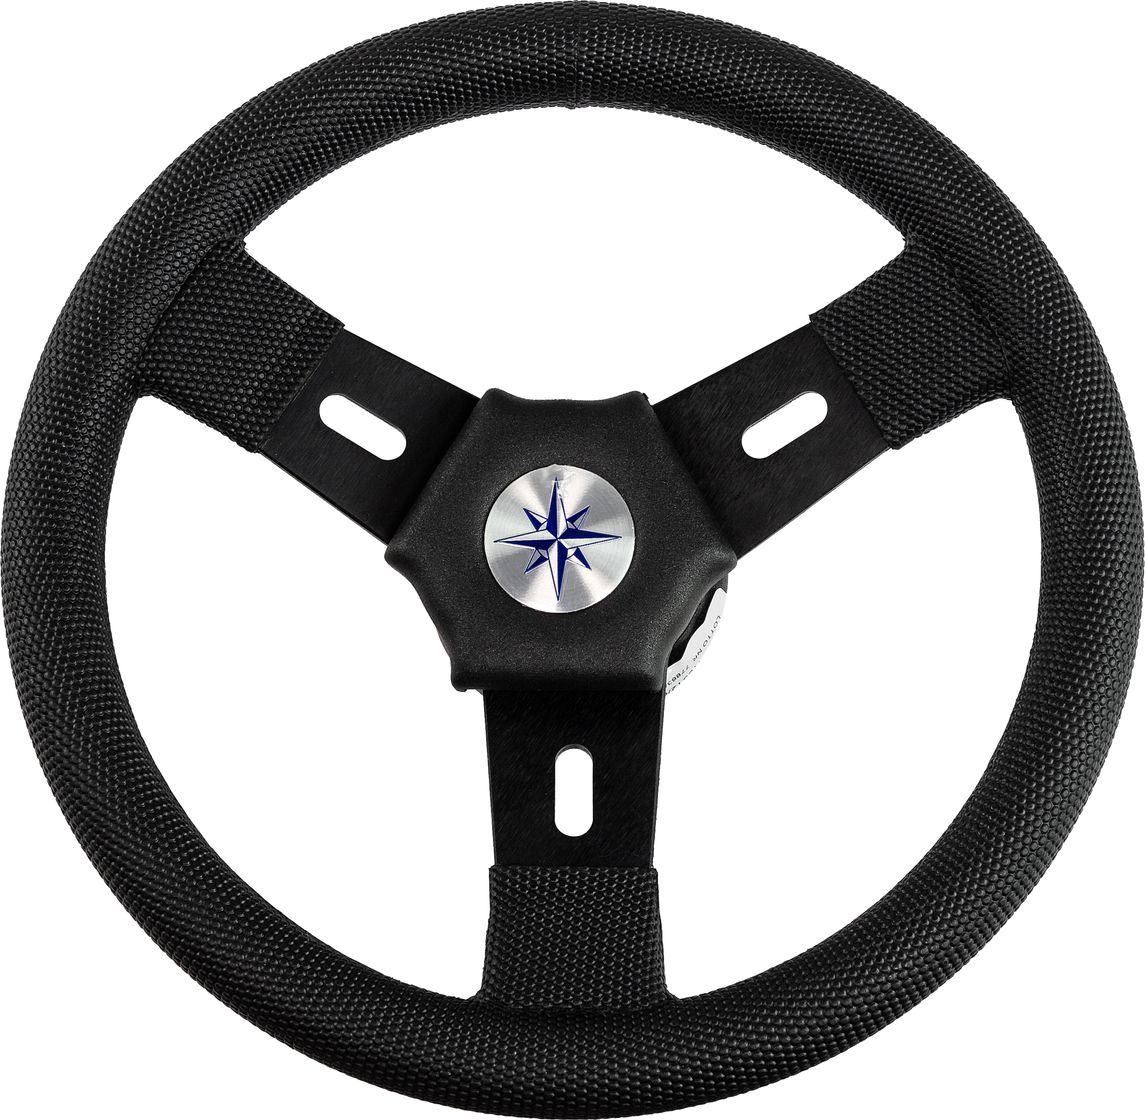 Рулевое колесо ELBA обод и спицы черные д. 300 мм VN10312-01 рулевое колесо isotta daponte 350 мм 1105 5 nm